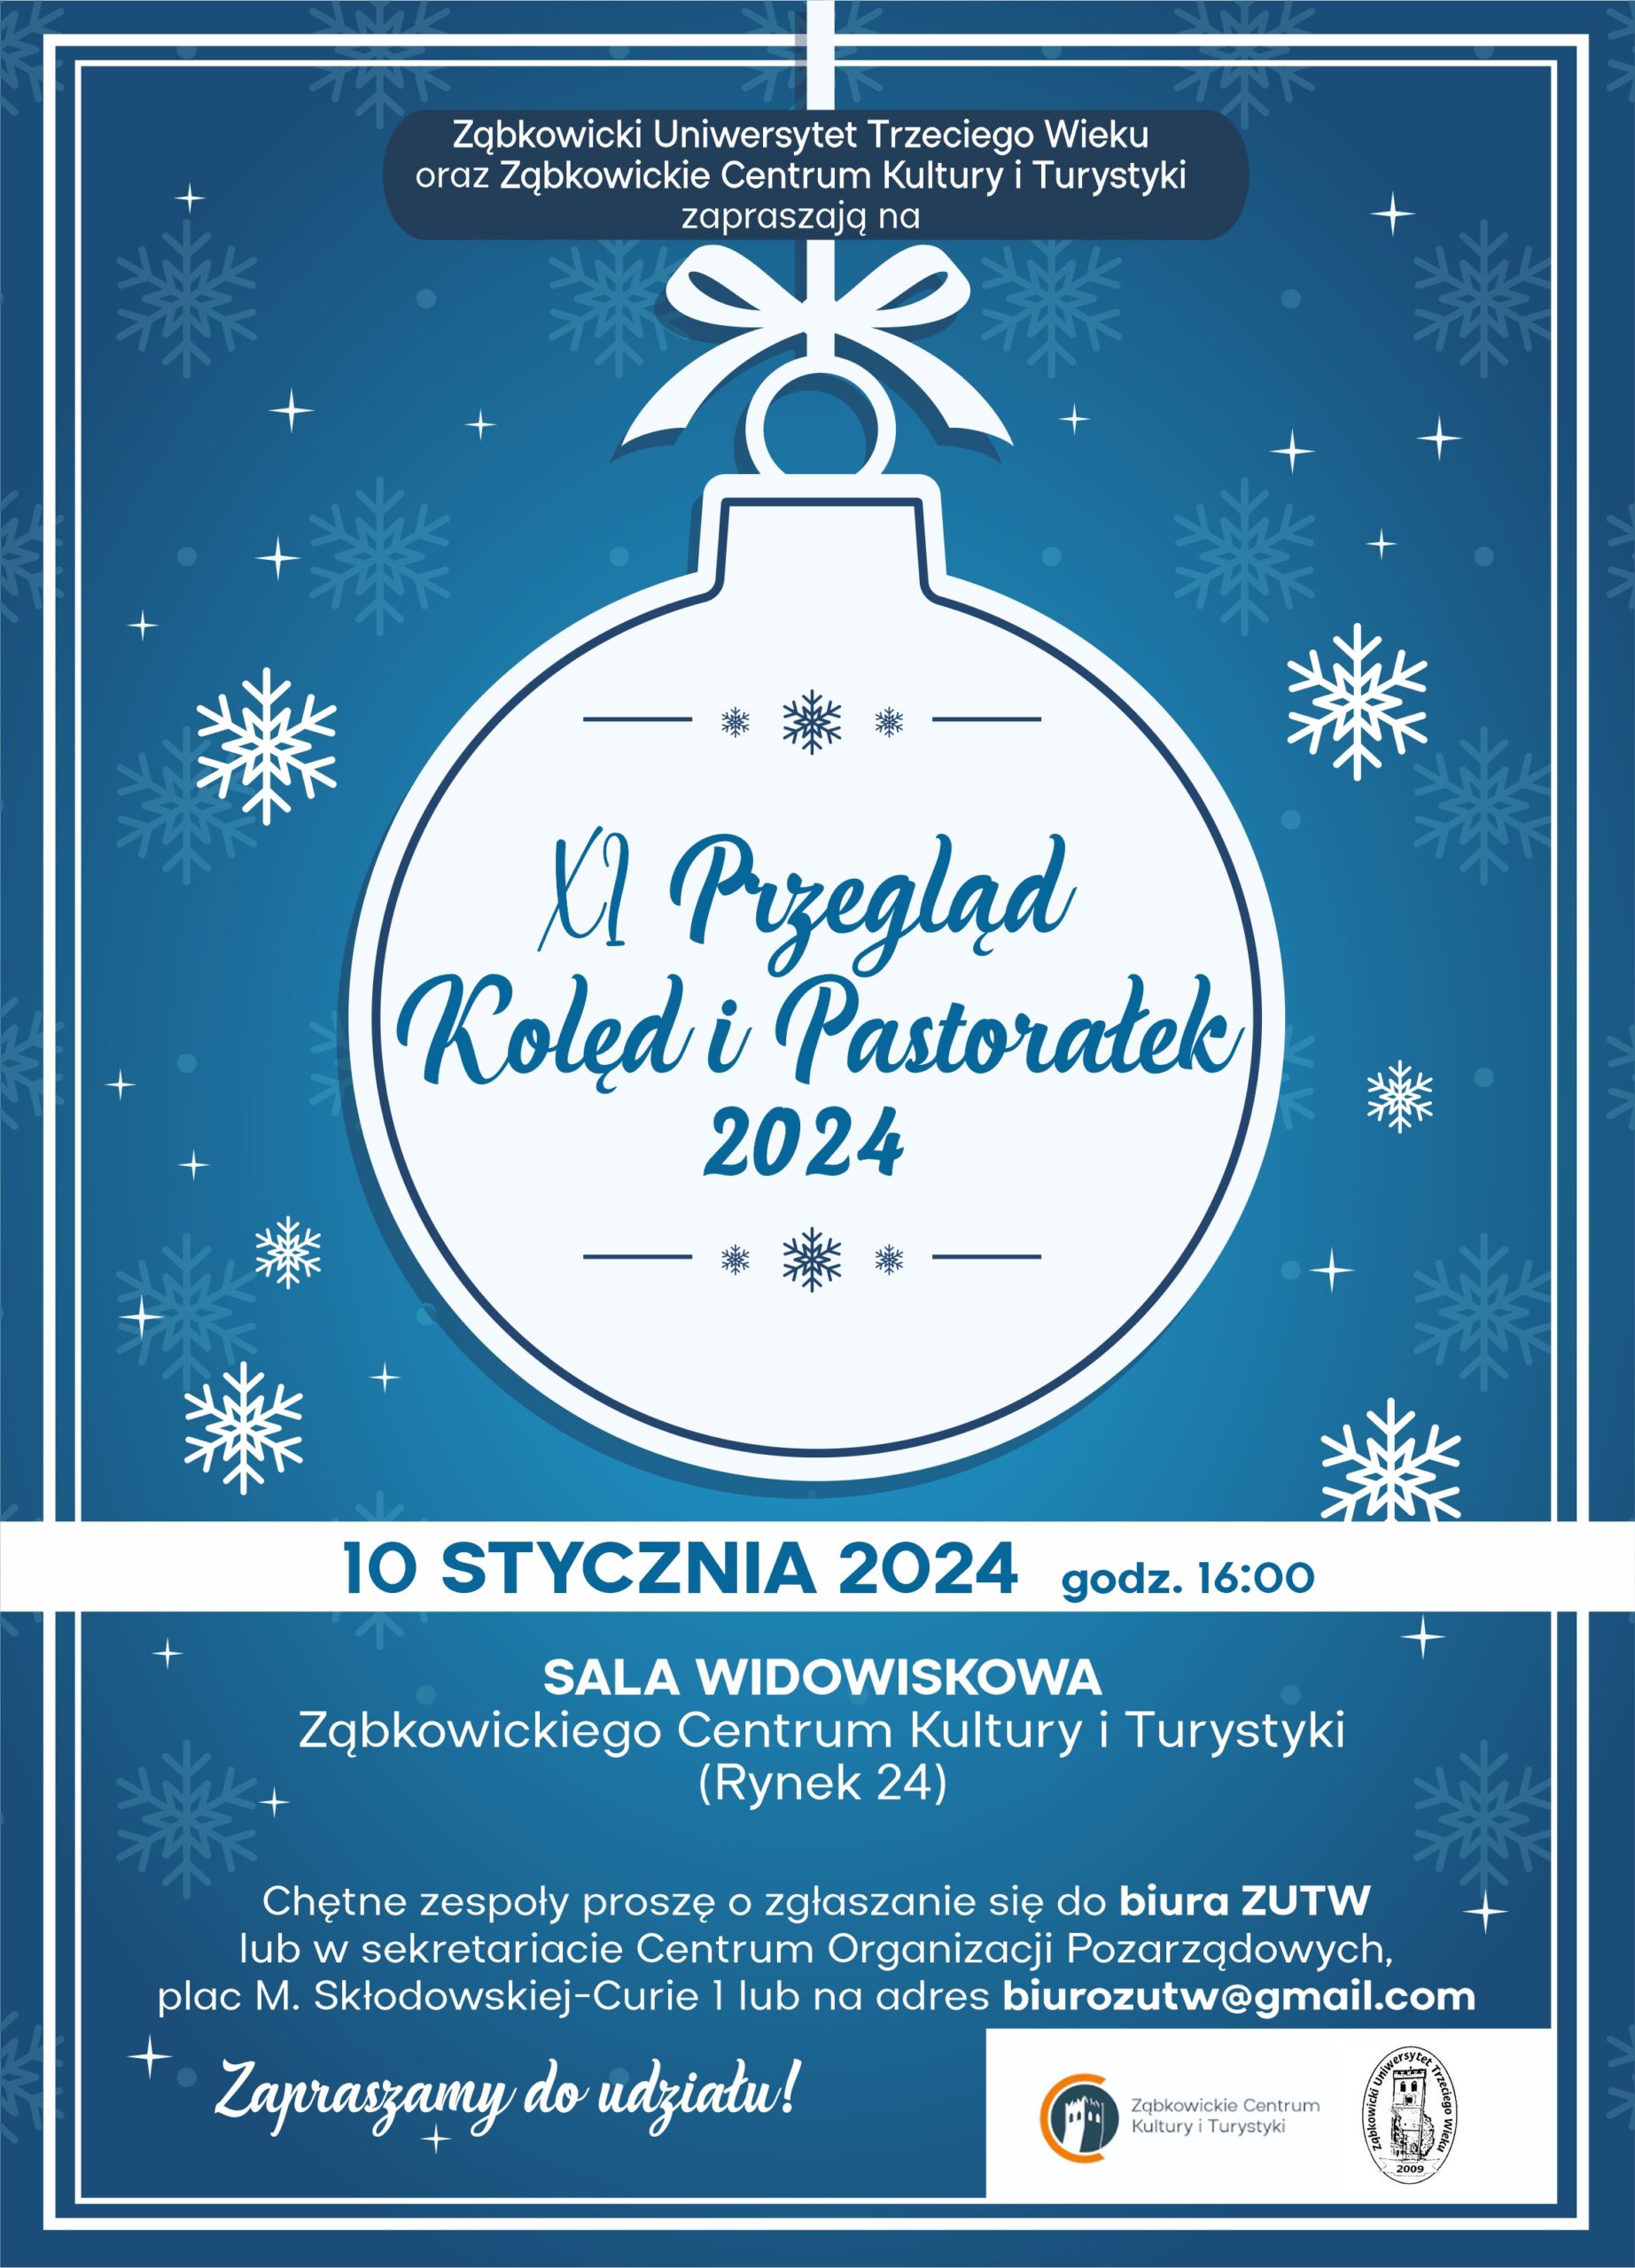 Plakat informacyjny o jedenastym przeglądzie kolęd i pastorałek 2024 w Ząbkowickim Centrum Kultury i Turystyki. Na plakacie znajduje się biała bombka choinkowa na niebieskim tle.